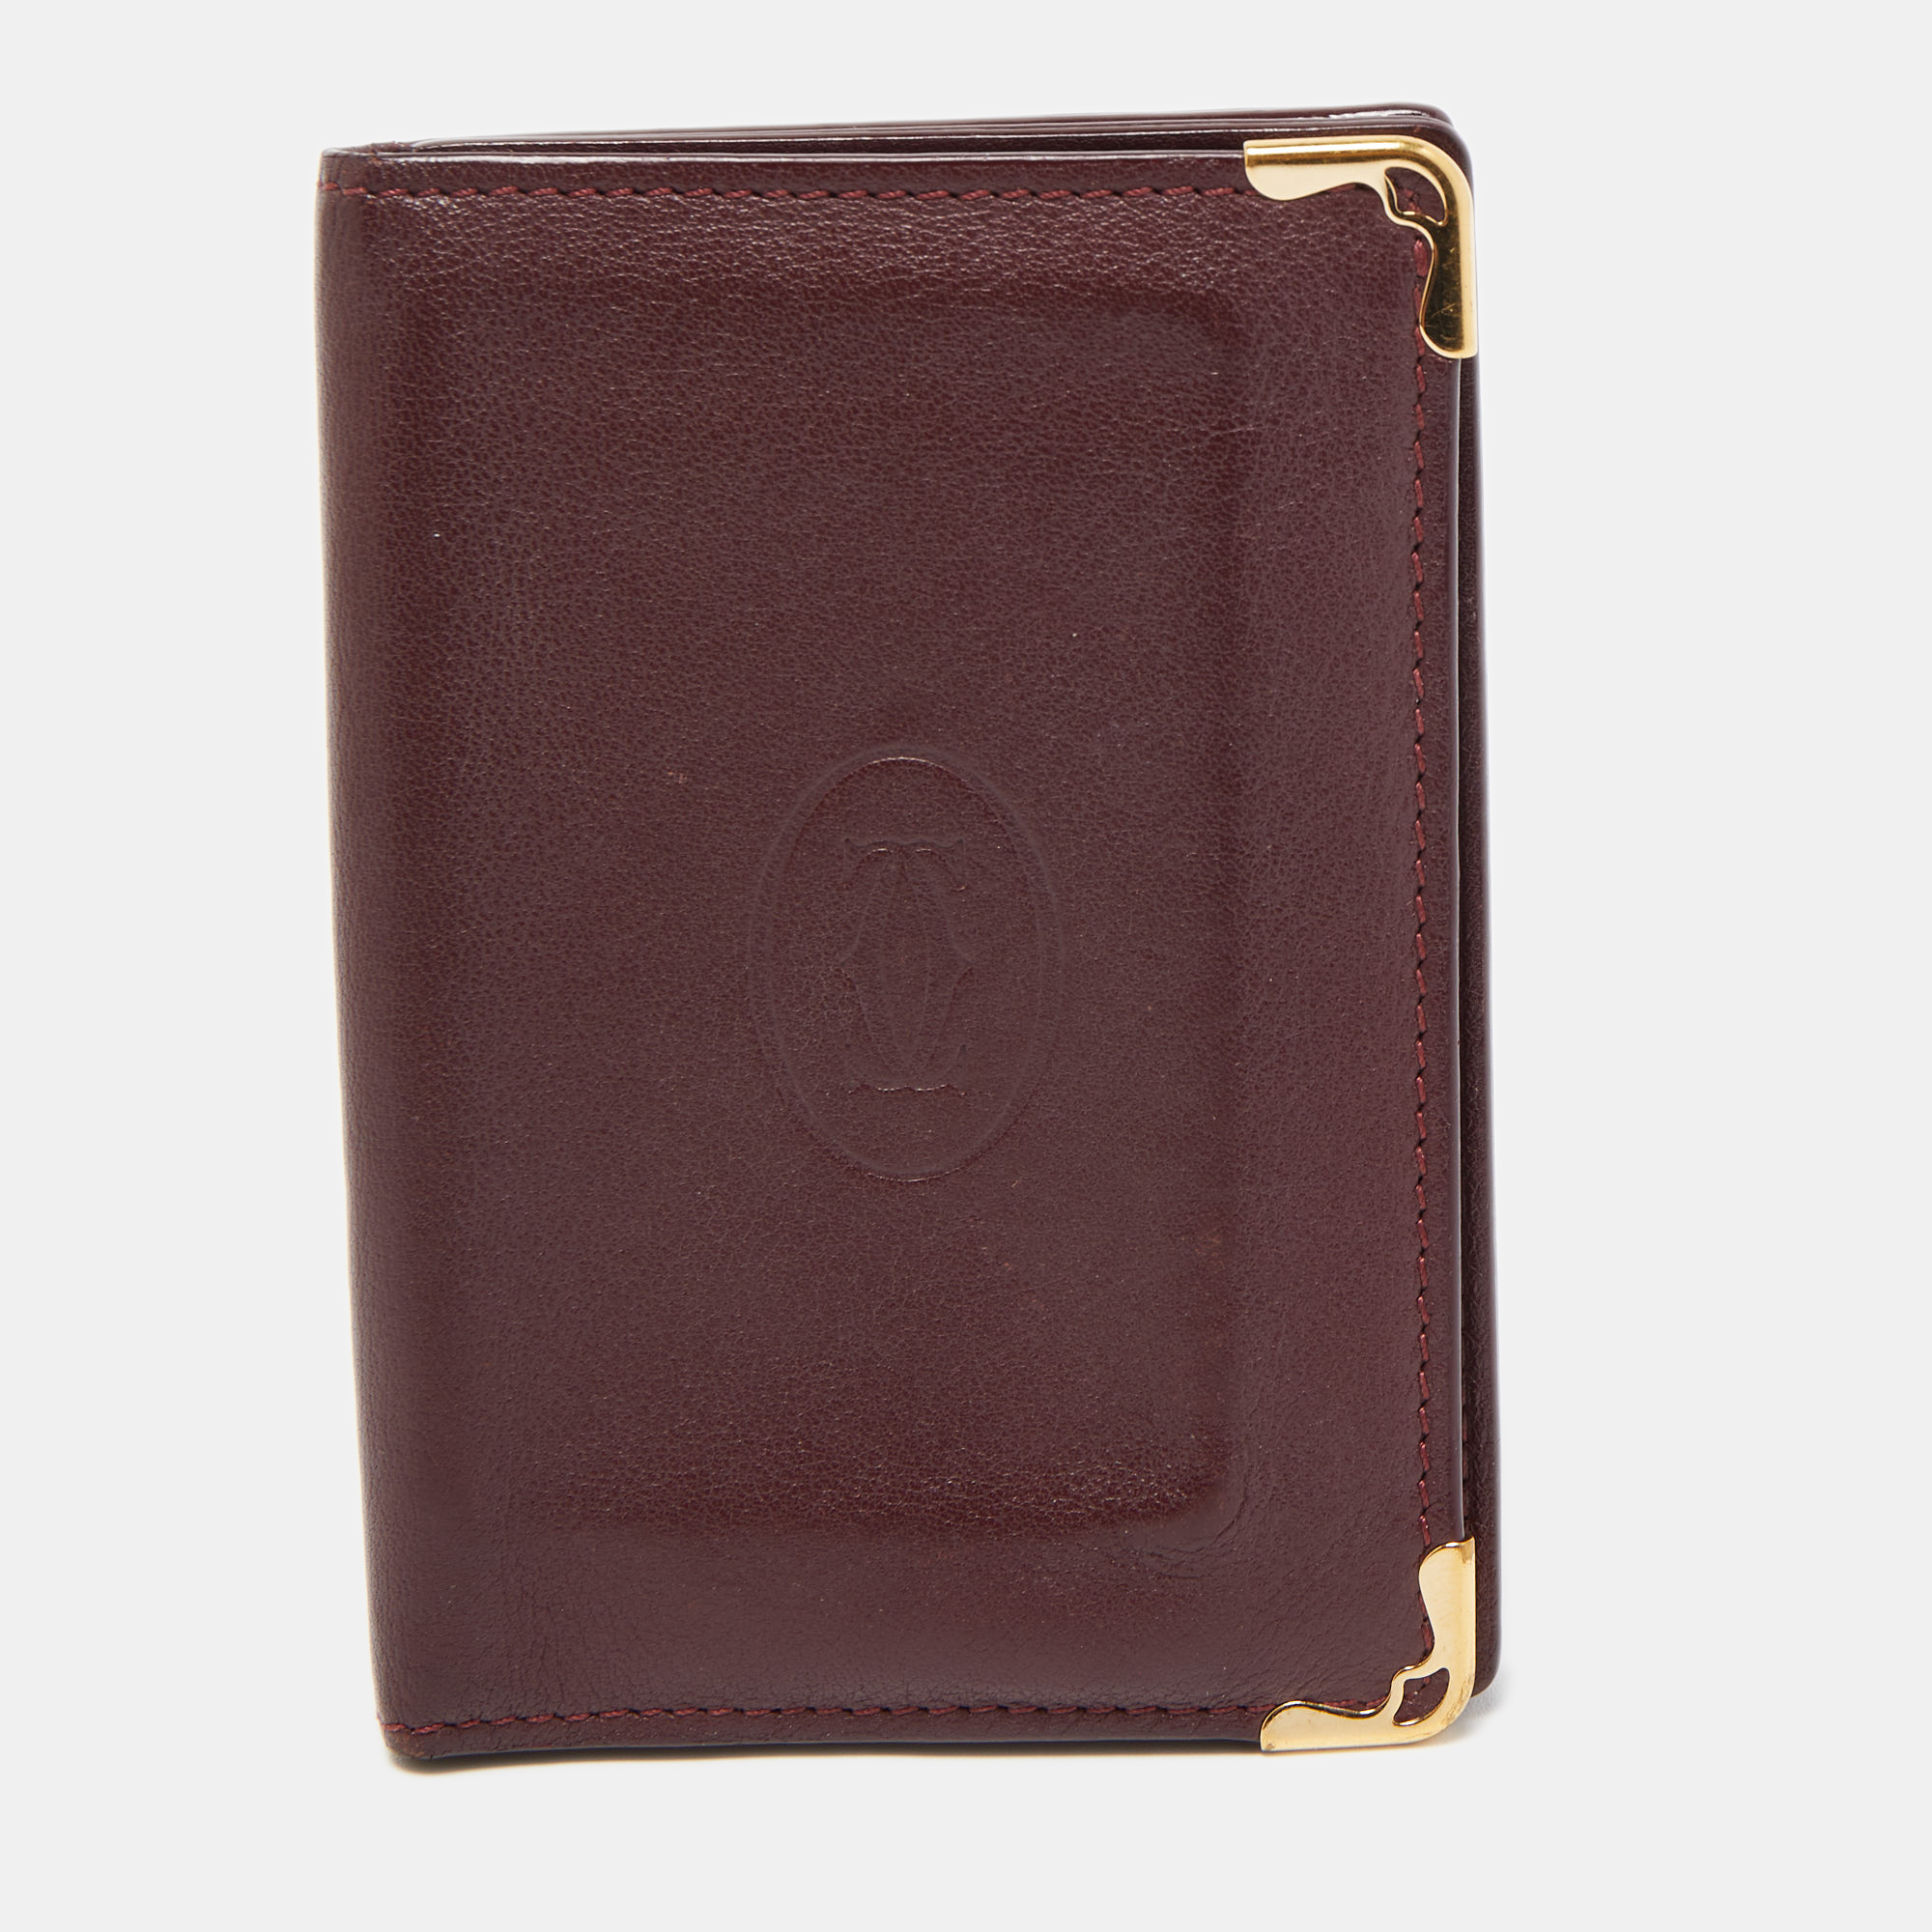 Cartier burgundy leather must de cartier card holder